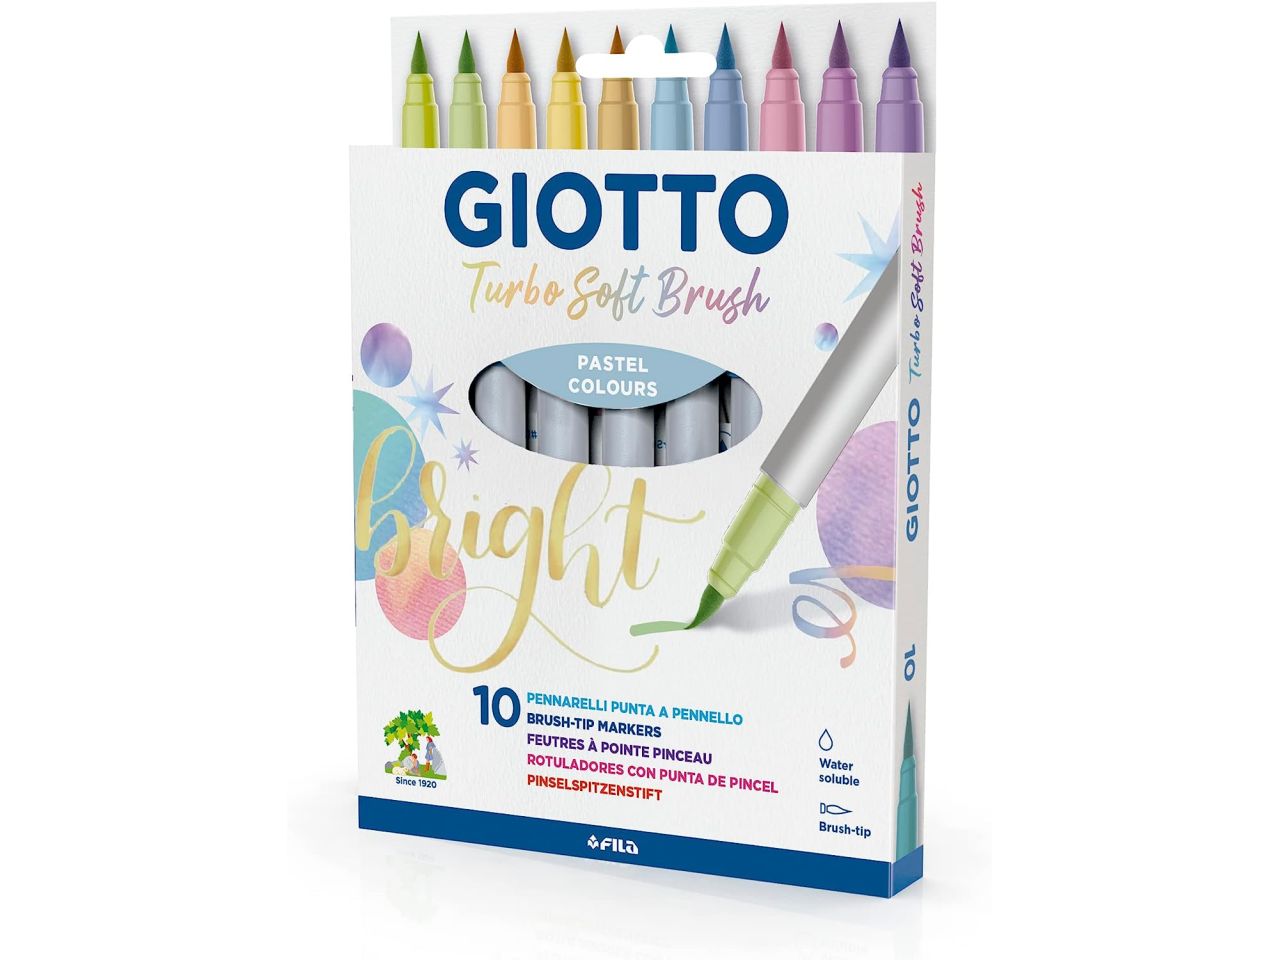 Giotto Turbo Soft Brush, Pennarelli con punta a pennello, punta